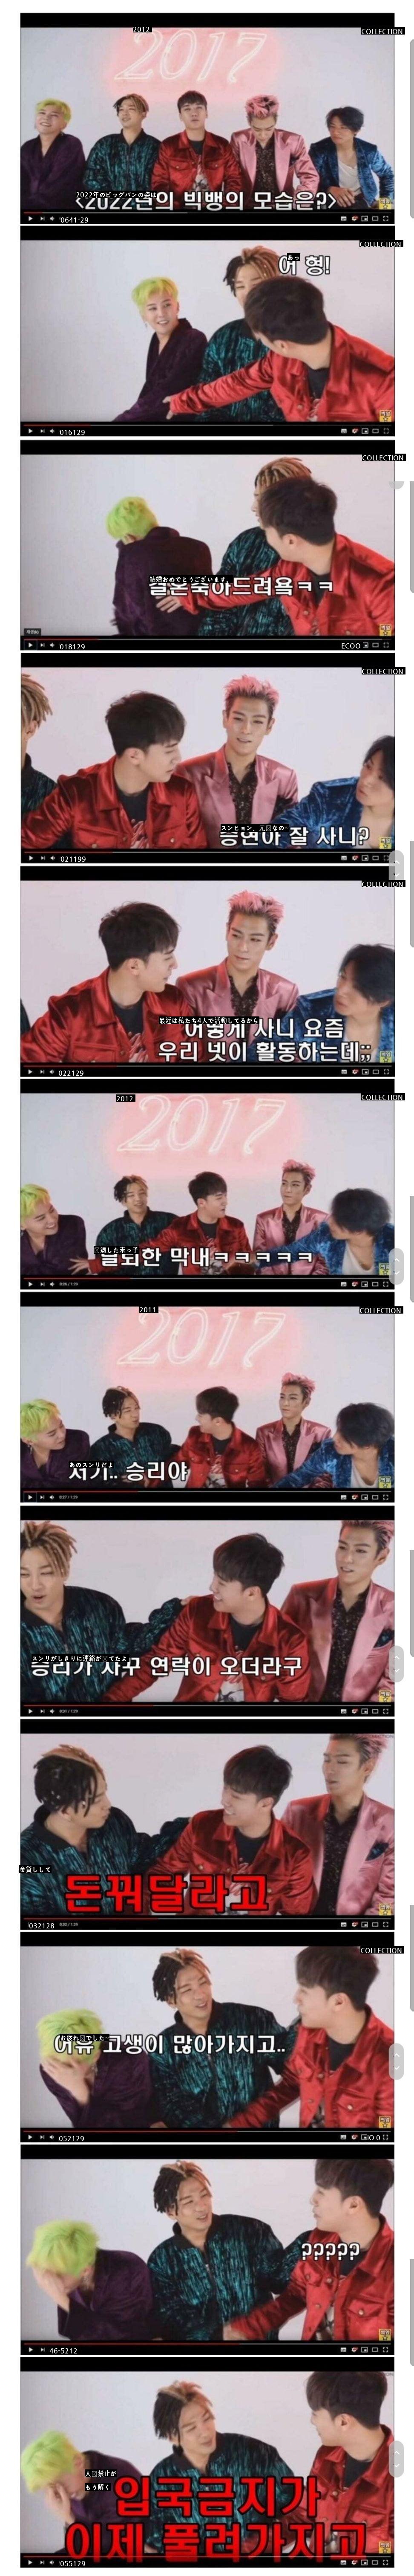 5年前のBIGBANGが予想した 2022年BIGBANGの姿